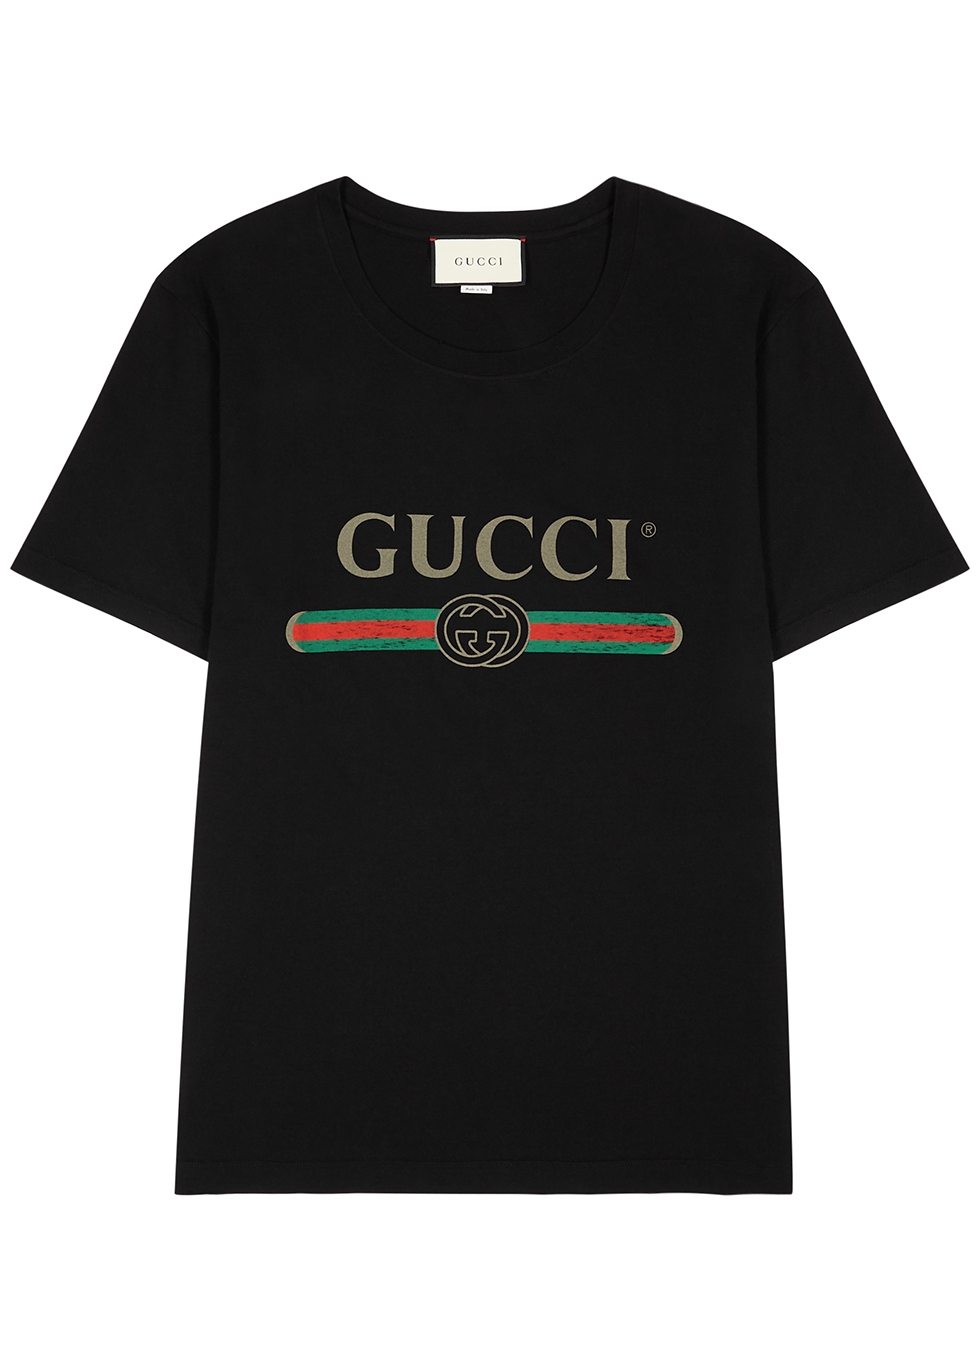 gucci black tshirt